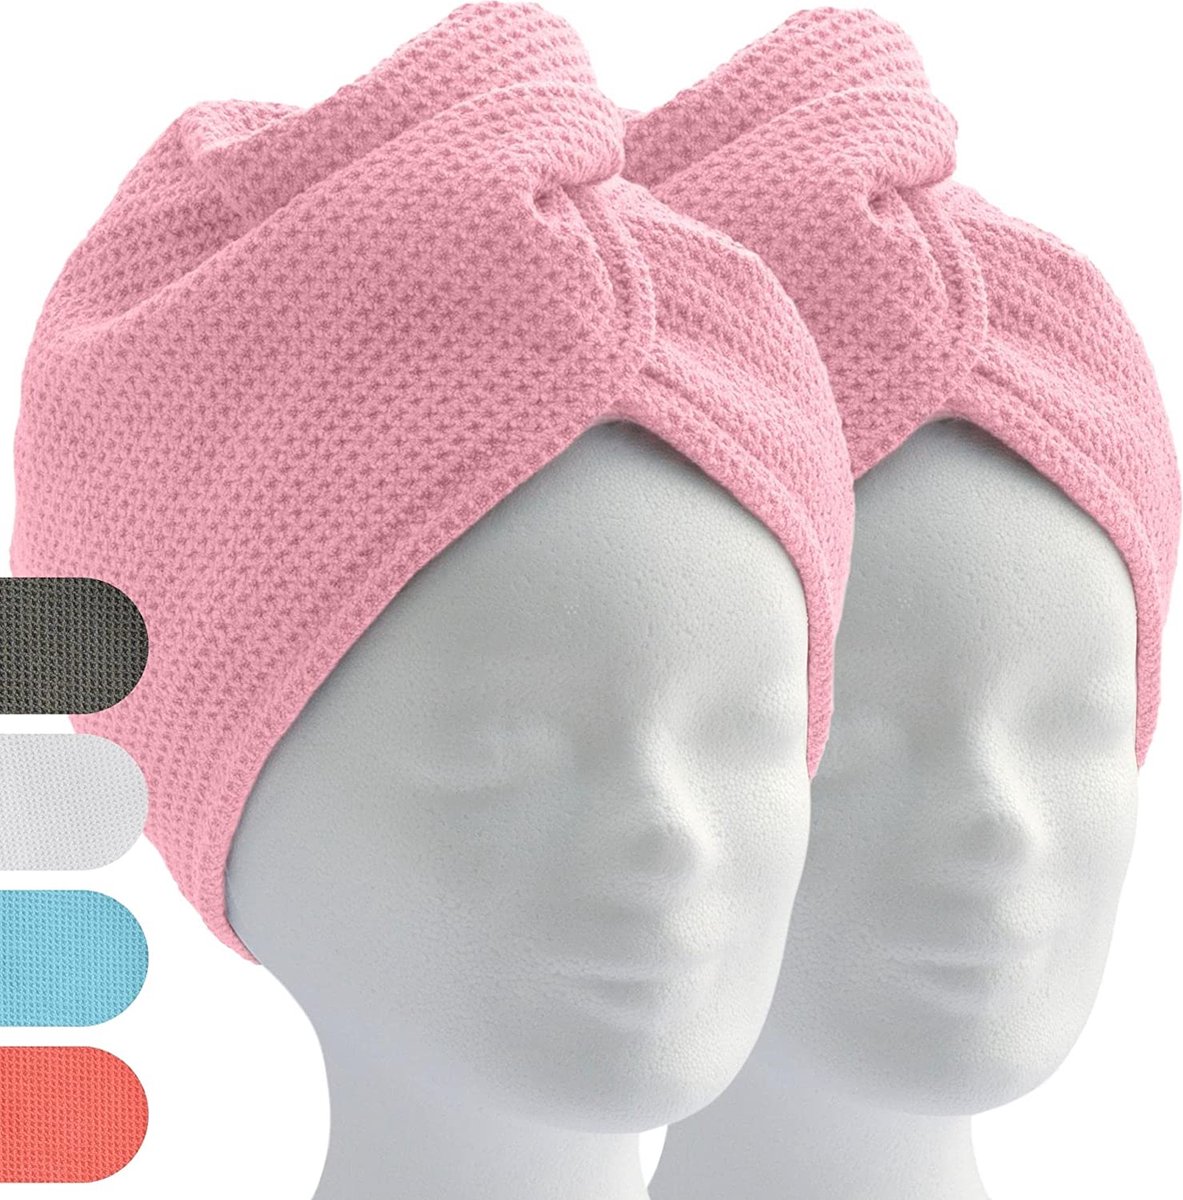 ELEXACARE Haartulband, tulbandhanddoek met knoop (2 stuks roze/roze), microvezel handdoek voor hoofd en lang haar